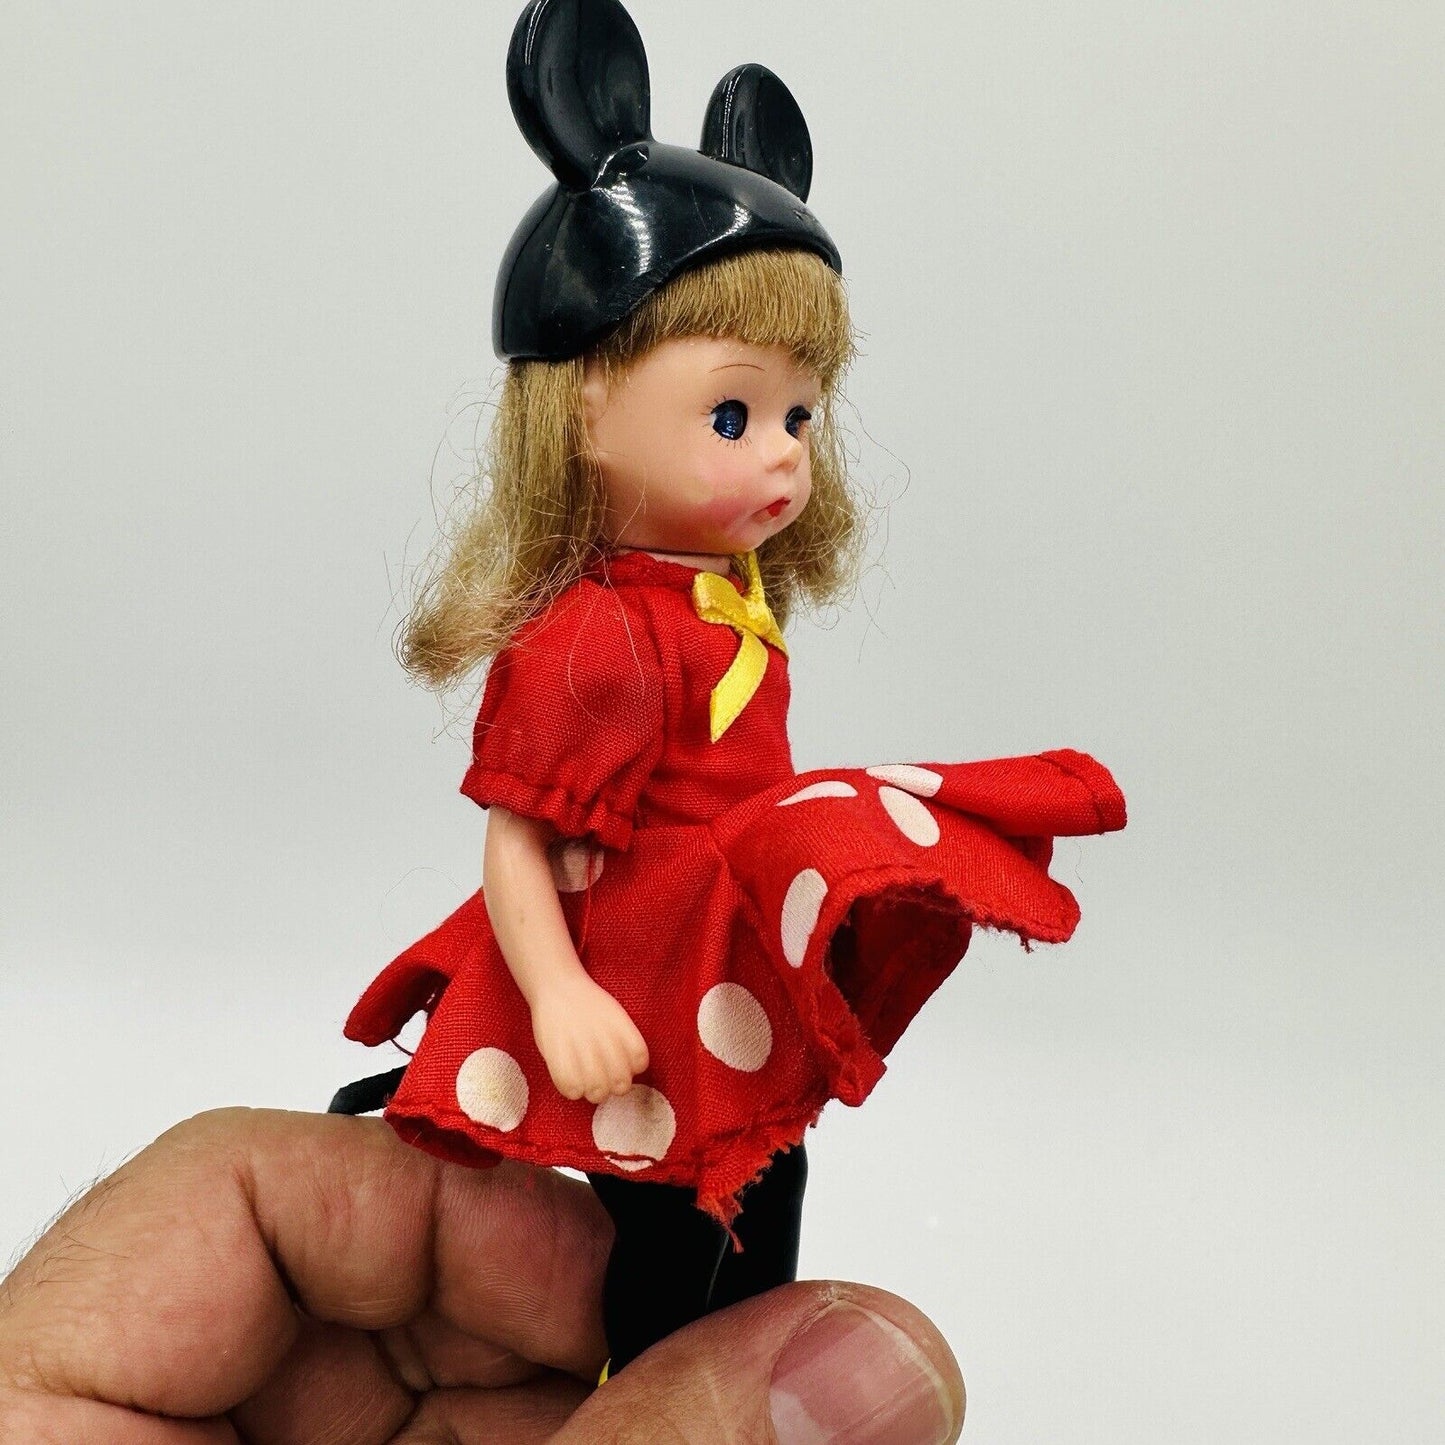 Vintage Madame Alexander Dolls Disney Minnie Jasmine Pinocchio Macdonald